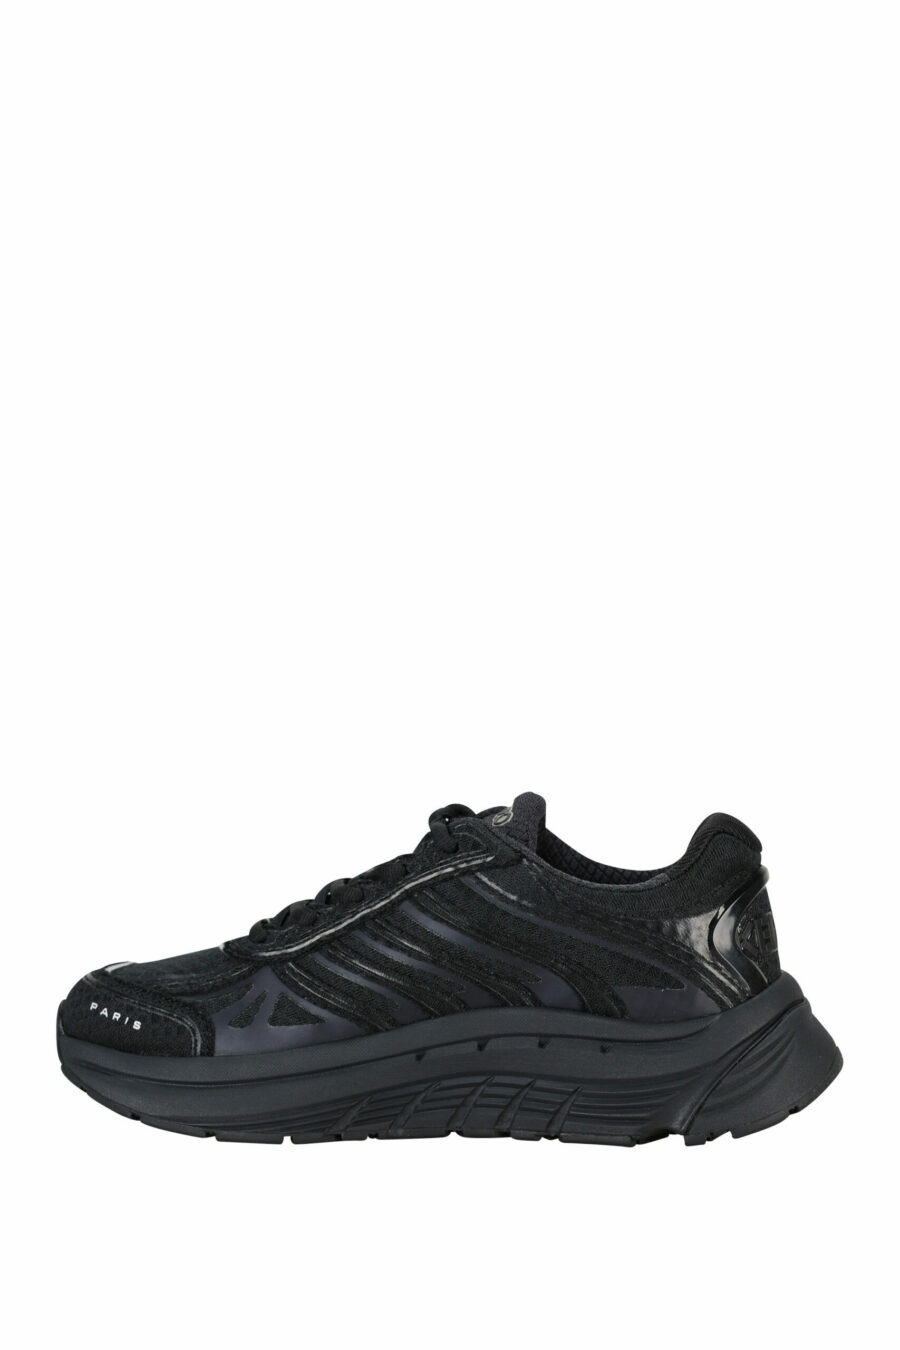 Zapatillas negras "kenzo tech runner" con minilogo blanco - 3612230549722 2 scaled